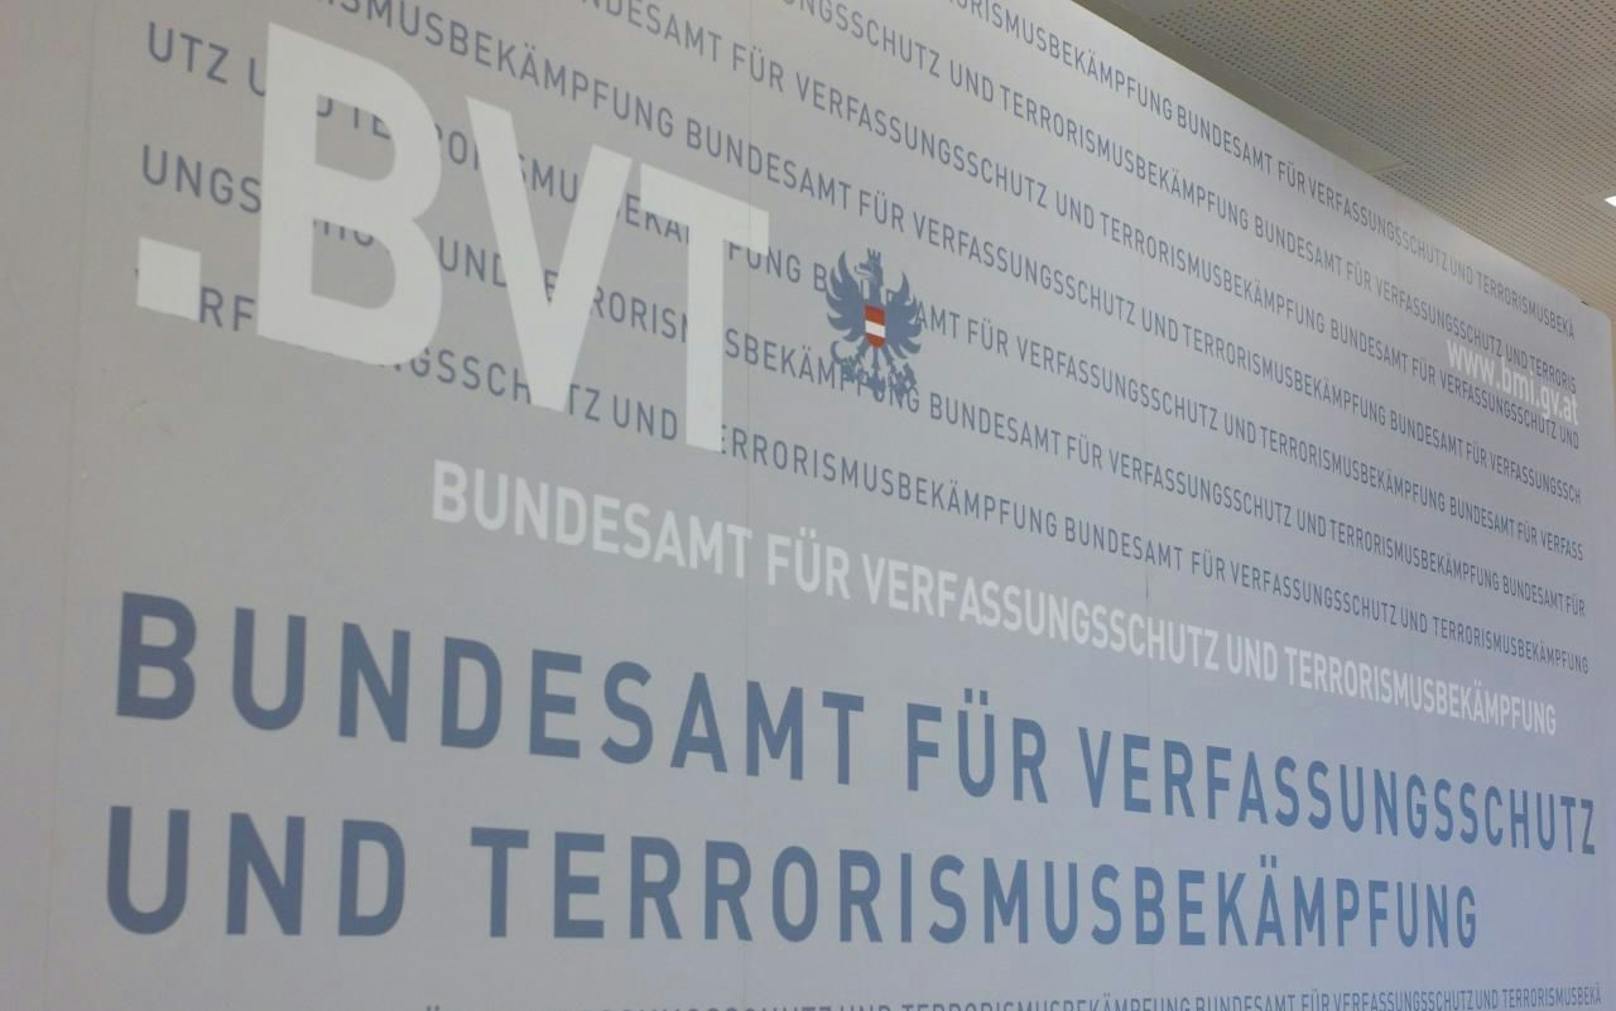  Bundesamt für Verfassungsschutz und
Terrorismusbekämpfung, BVT